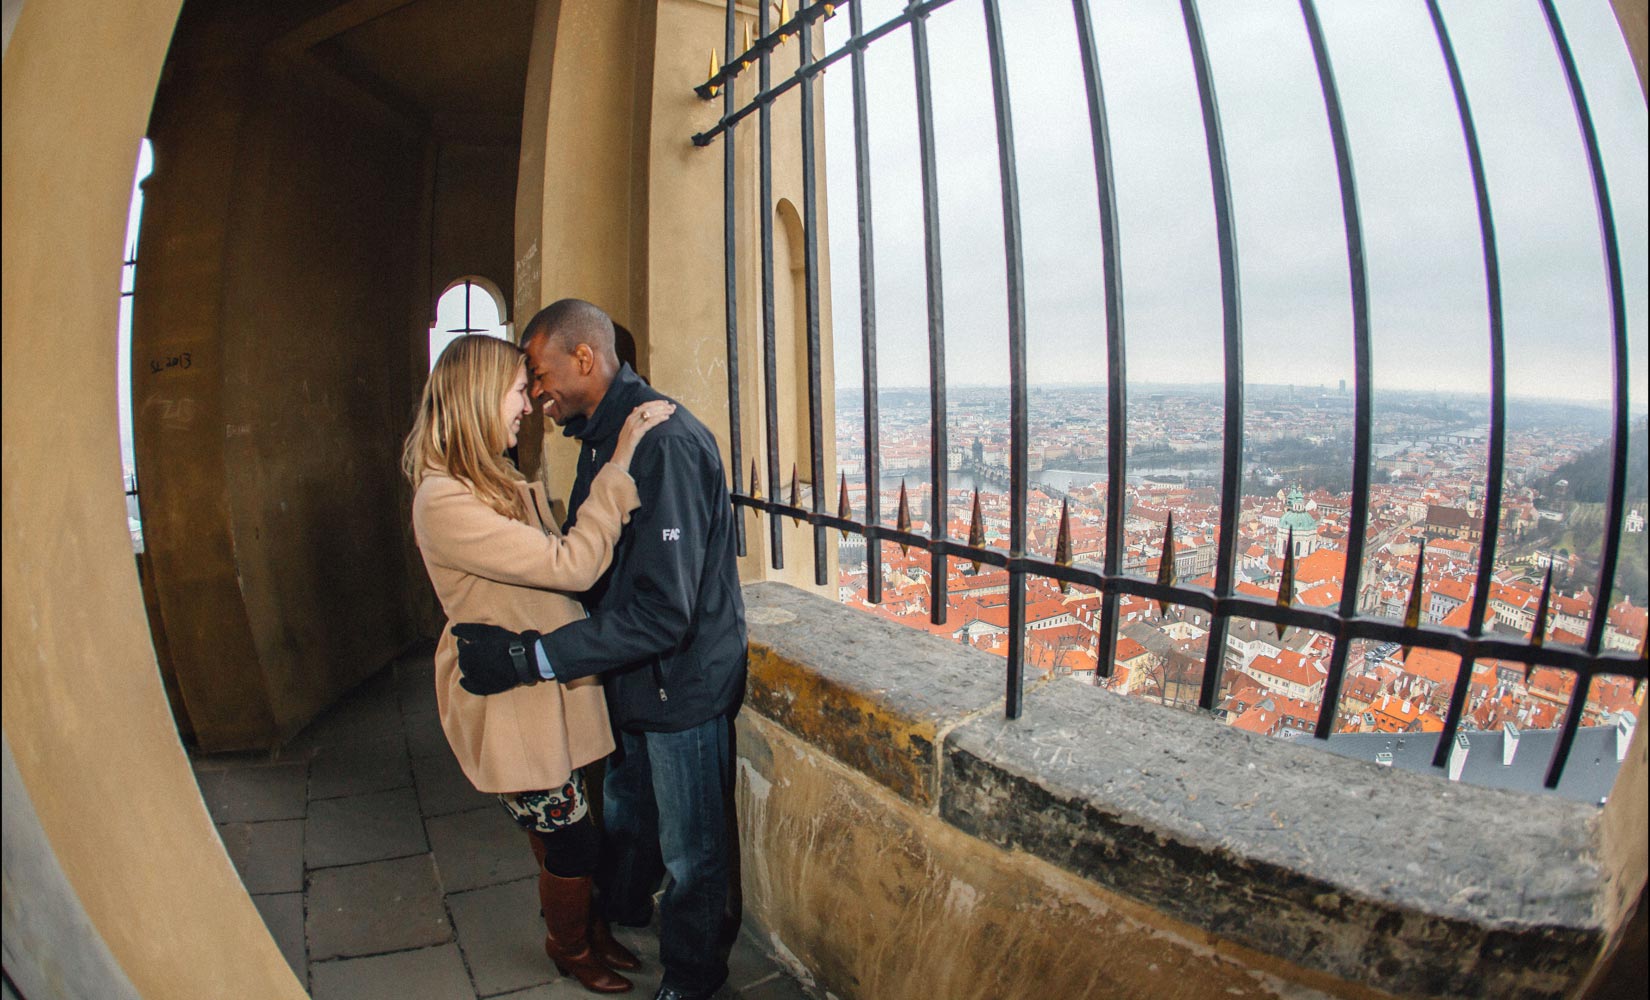 Prague Castle marriage proposal / J & F / portrait session